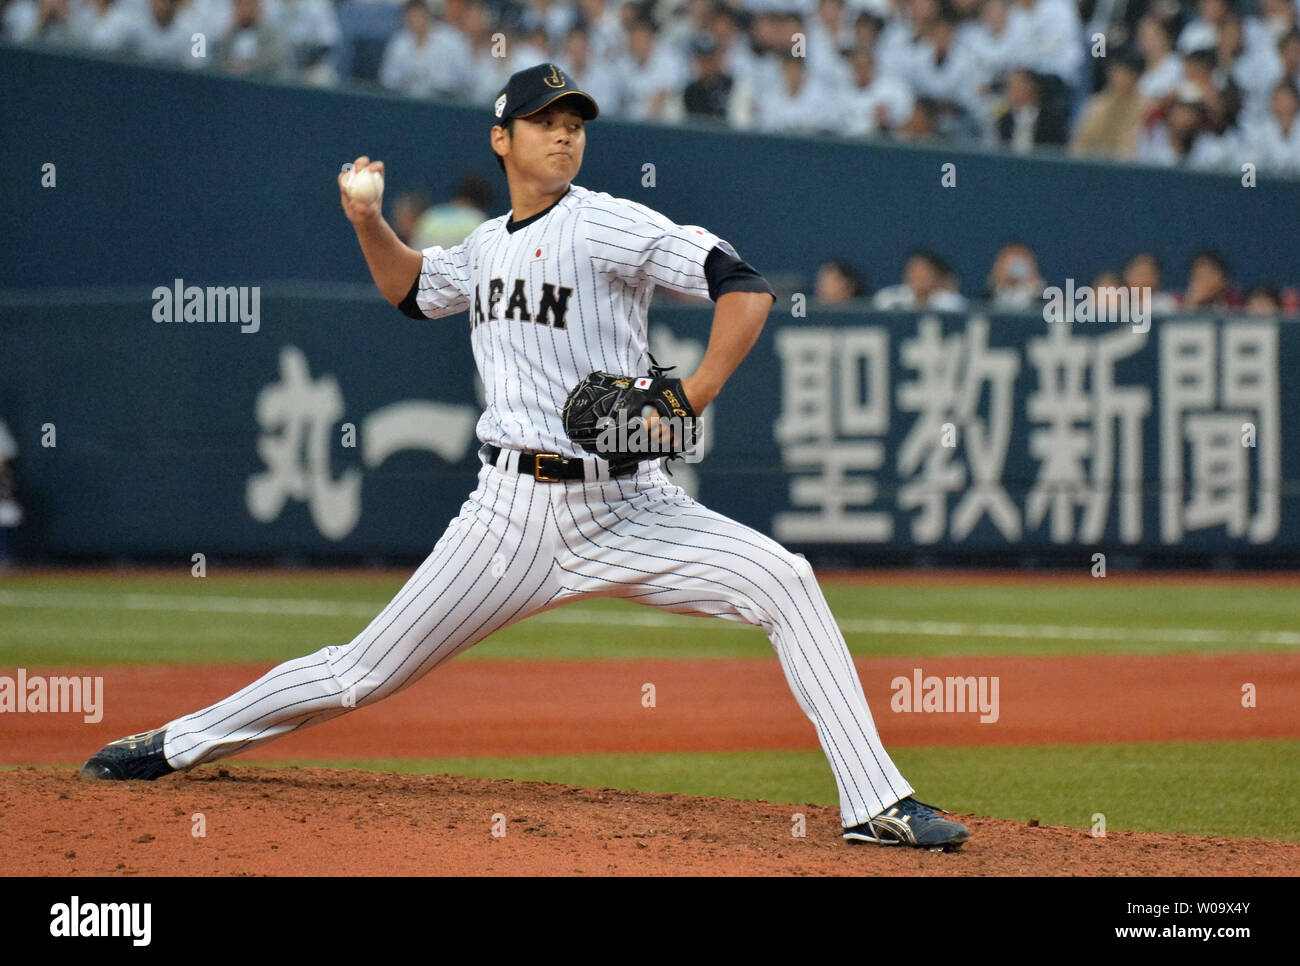 L'équipe nationale japonaise pitcher Shohei Otani jette une hauteur en huitième manche contre le MLB All Stars au Kyocera Dome Osaka à Osaka, Japon, le 12 novembre 2014. UPI/Keizo Mori Banque D'Images